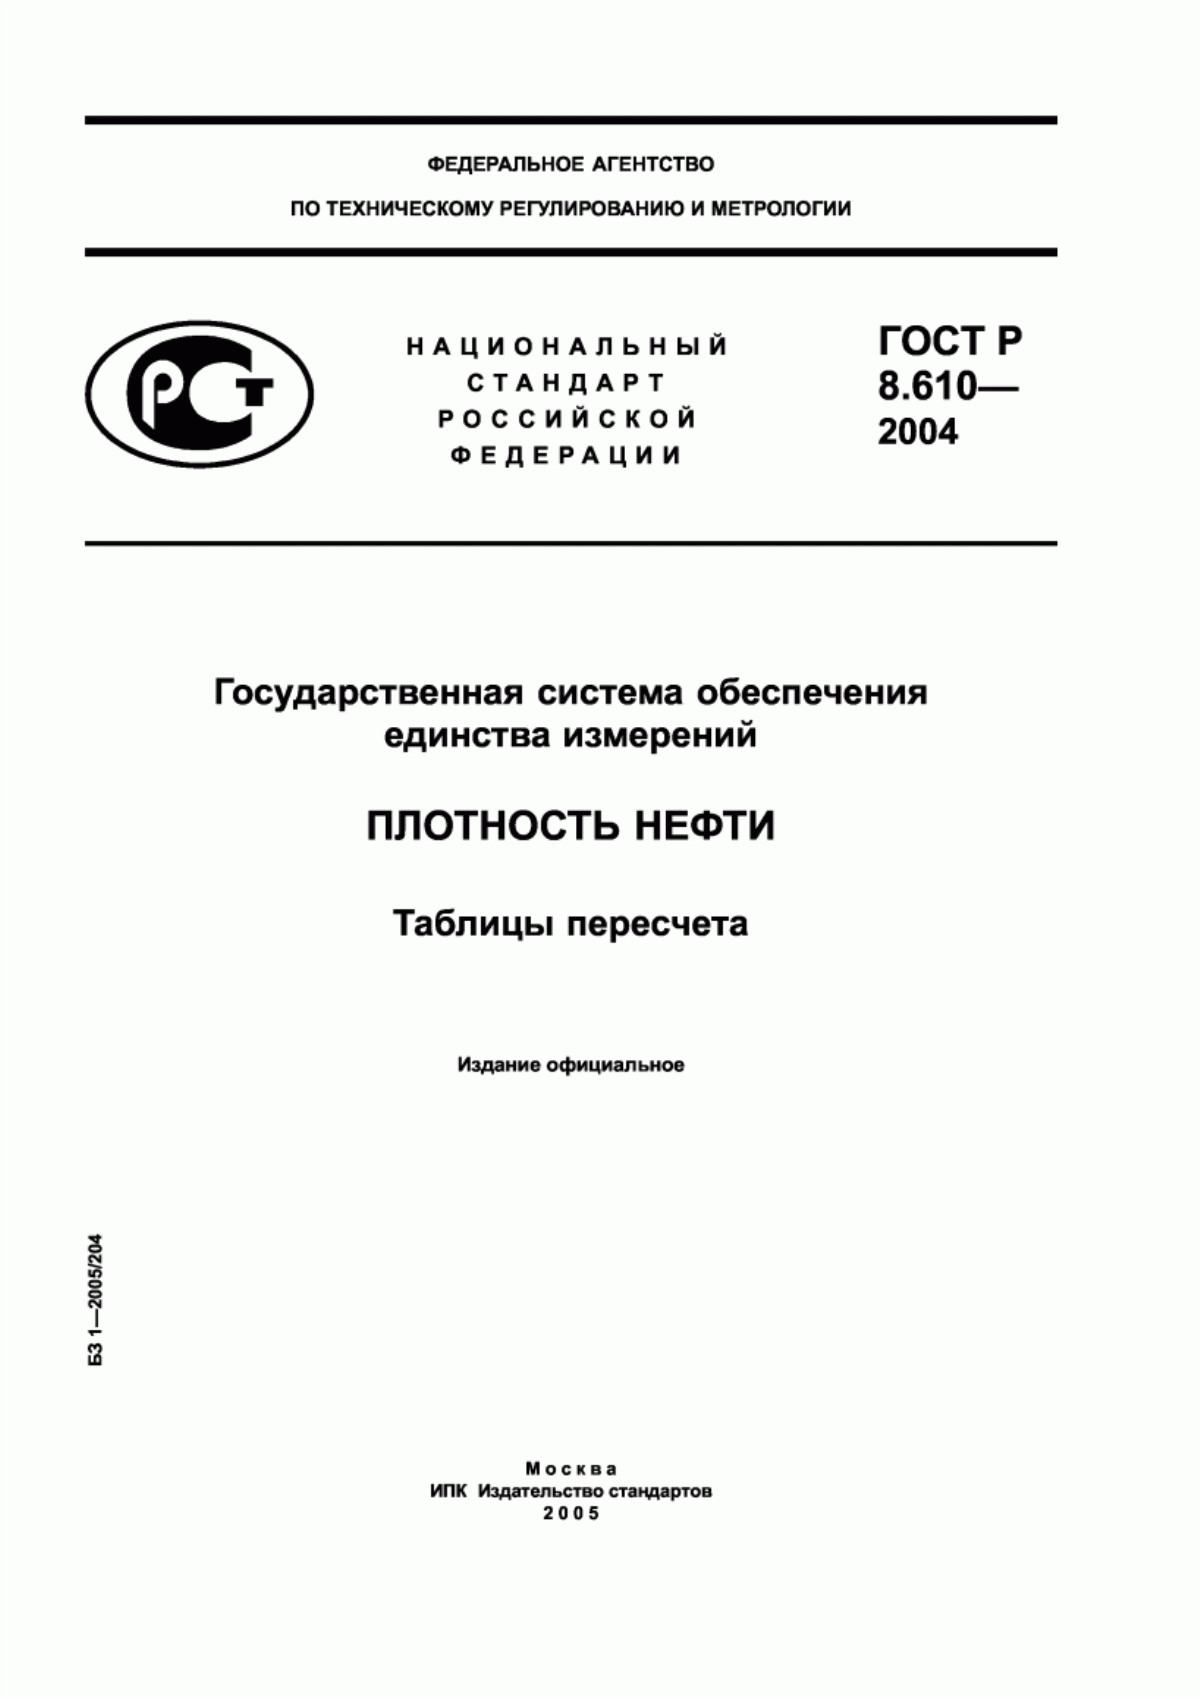 ГОСТ Р 8.610-2004 Государственная система обеспечения единства измерений. Плотность нефти. Таблицы пересчета